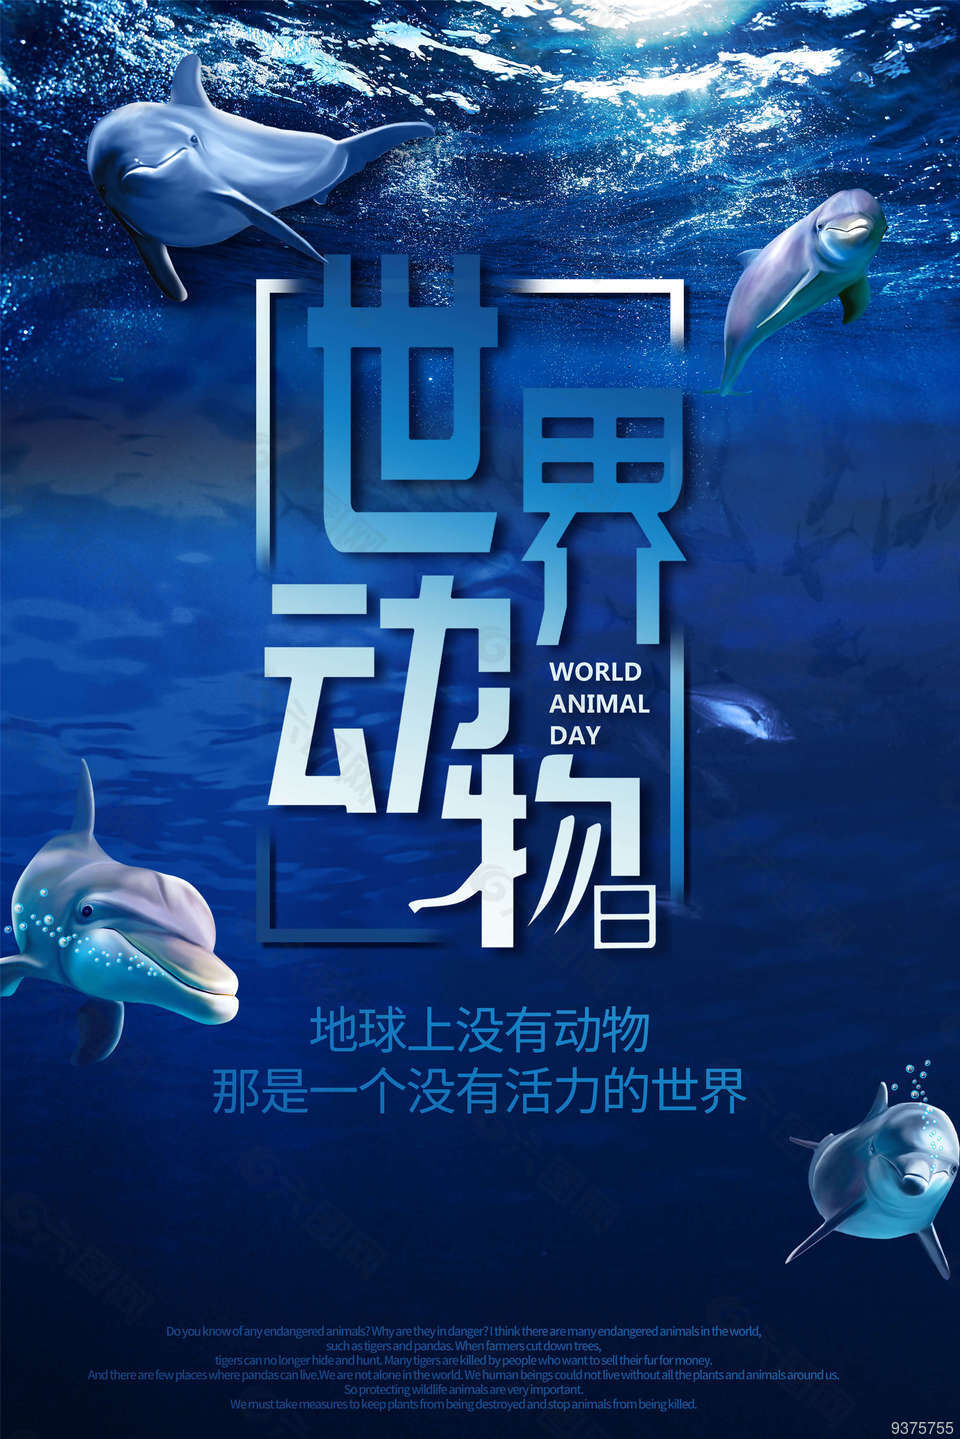 世界动物日蓝底海报